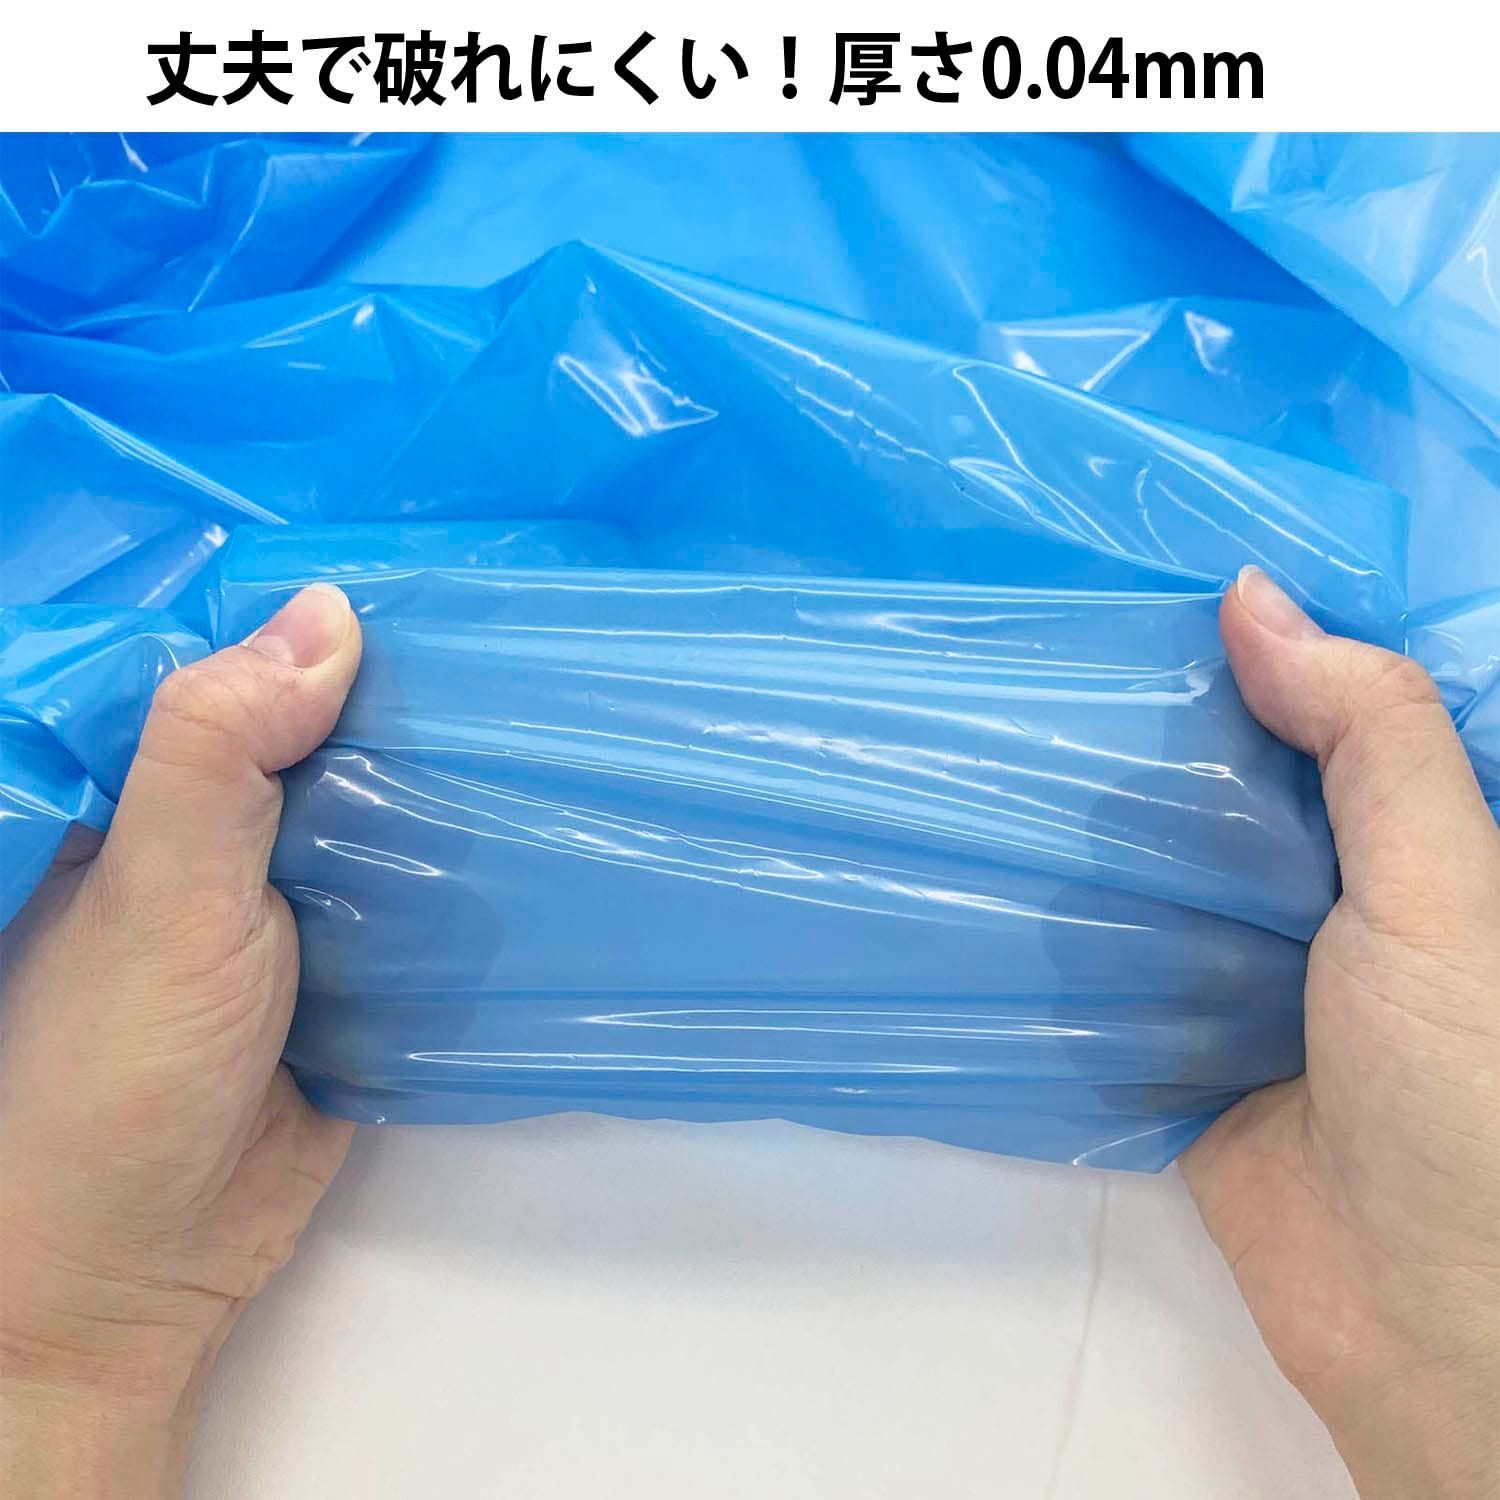 【人気商品】日泉ポリテック ゴミ袋 ダストパック 日本製 青 70L 10枚入×3個セット